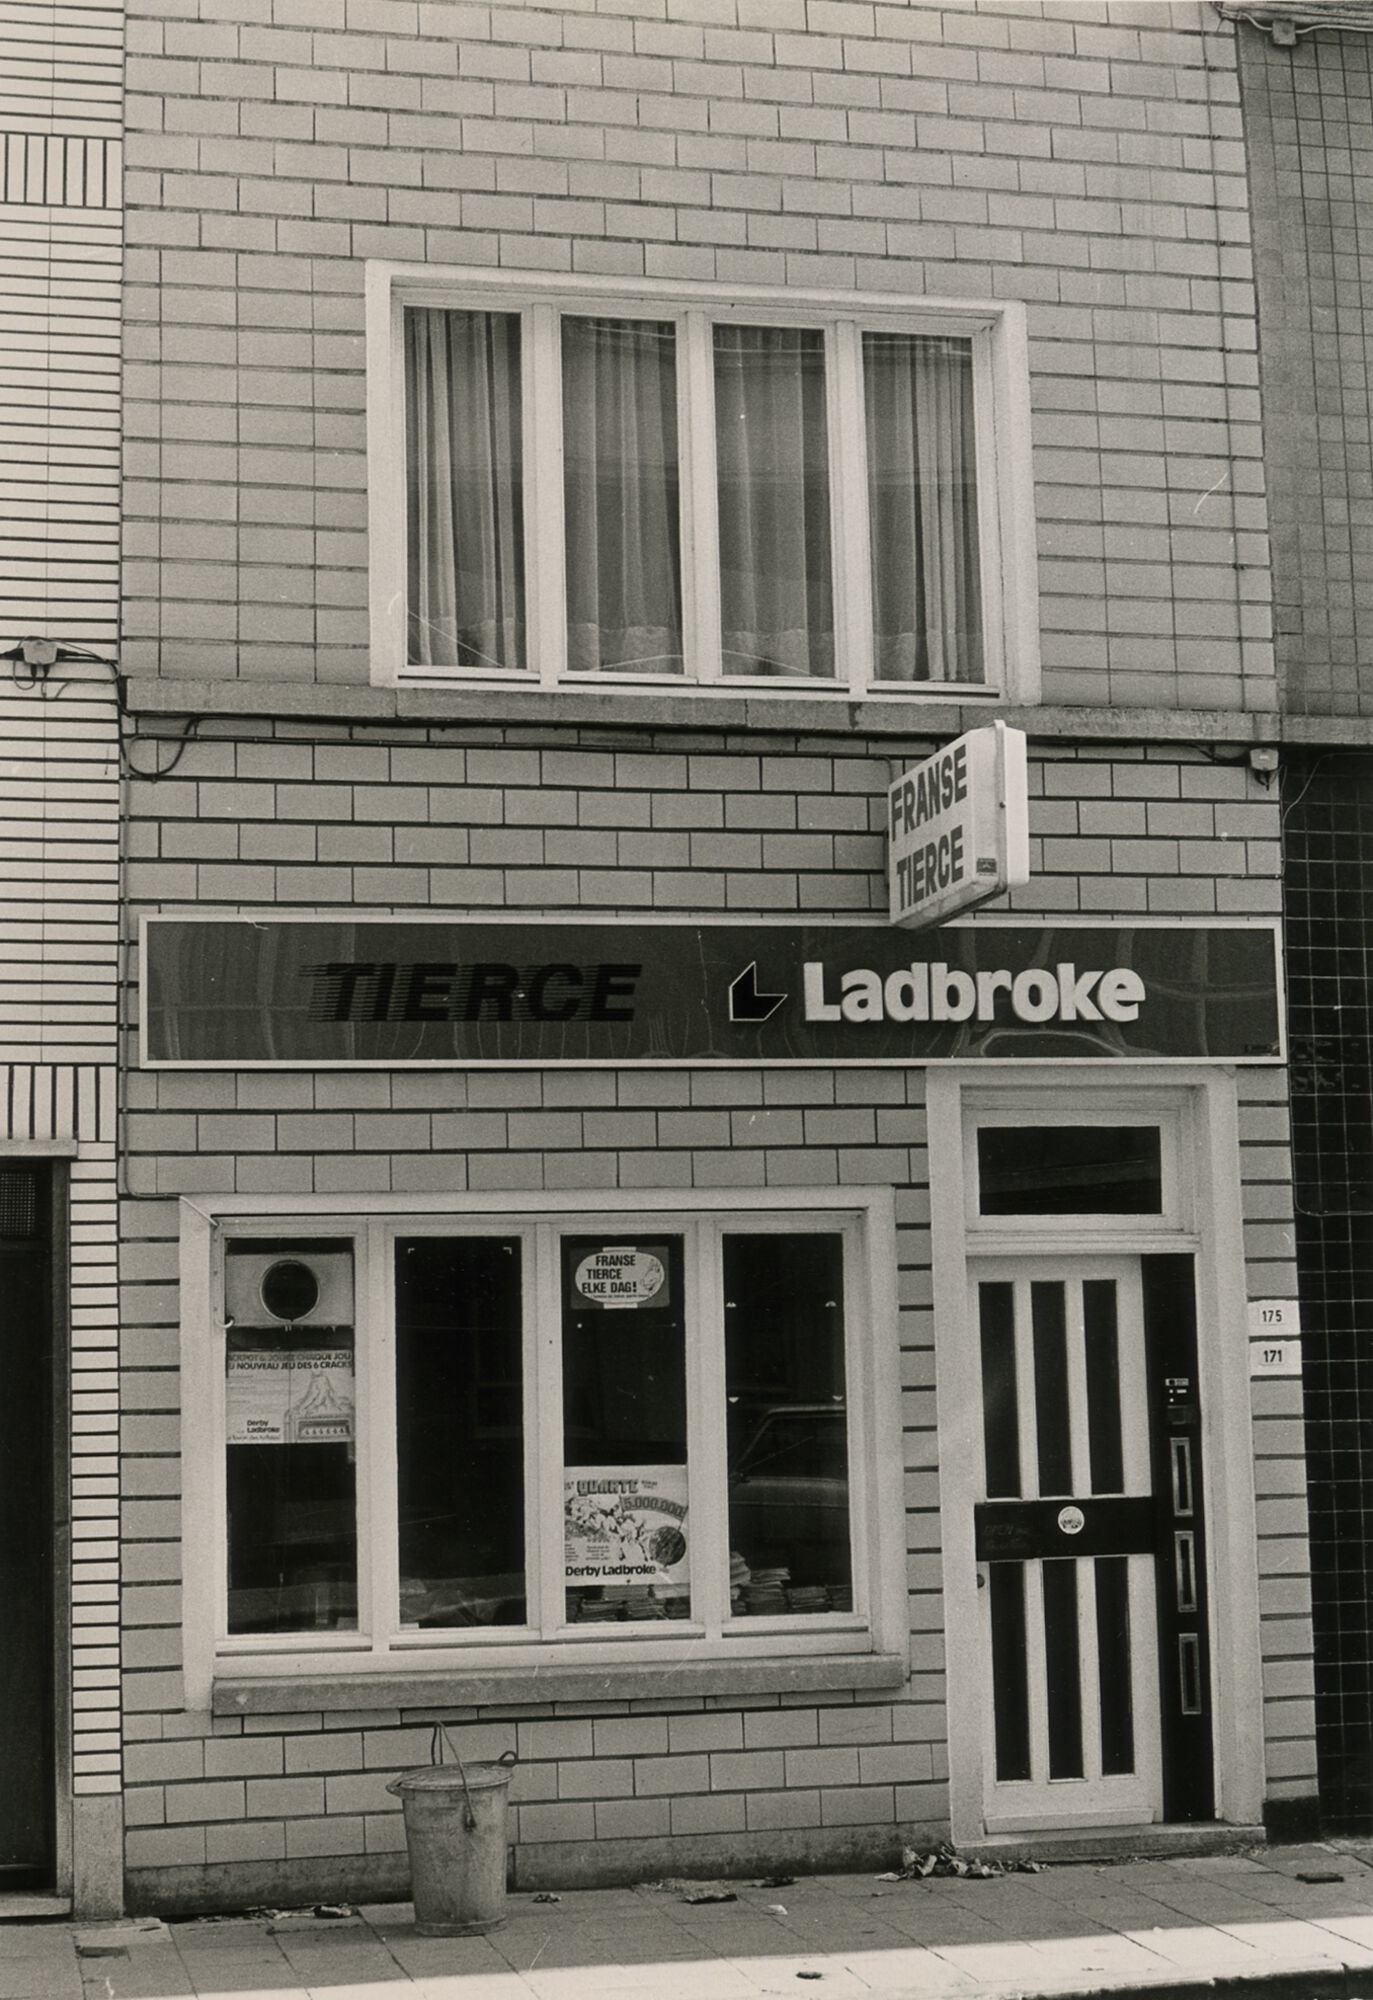 Etalage van een Tierce - Ladbroke kantoor in Gent